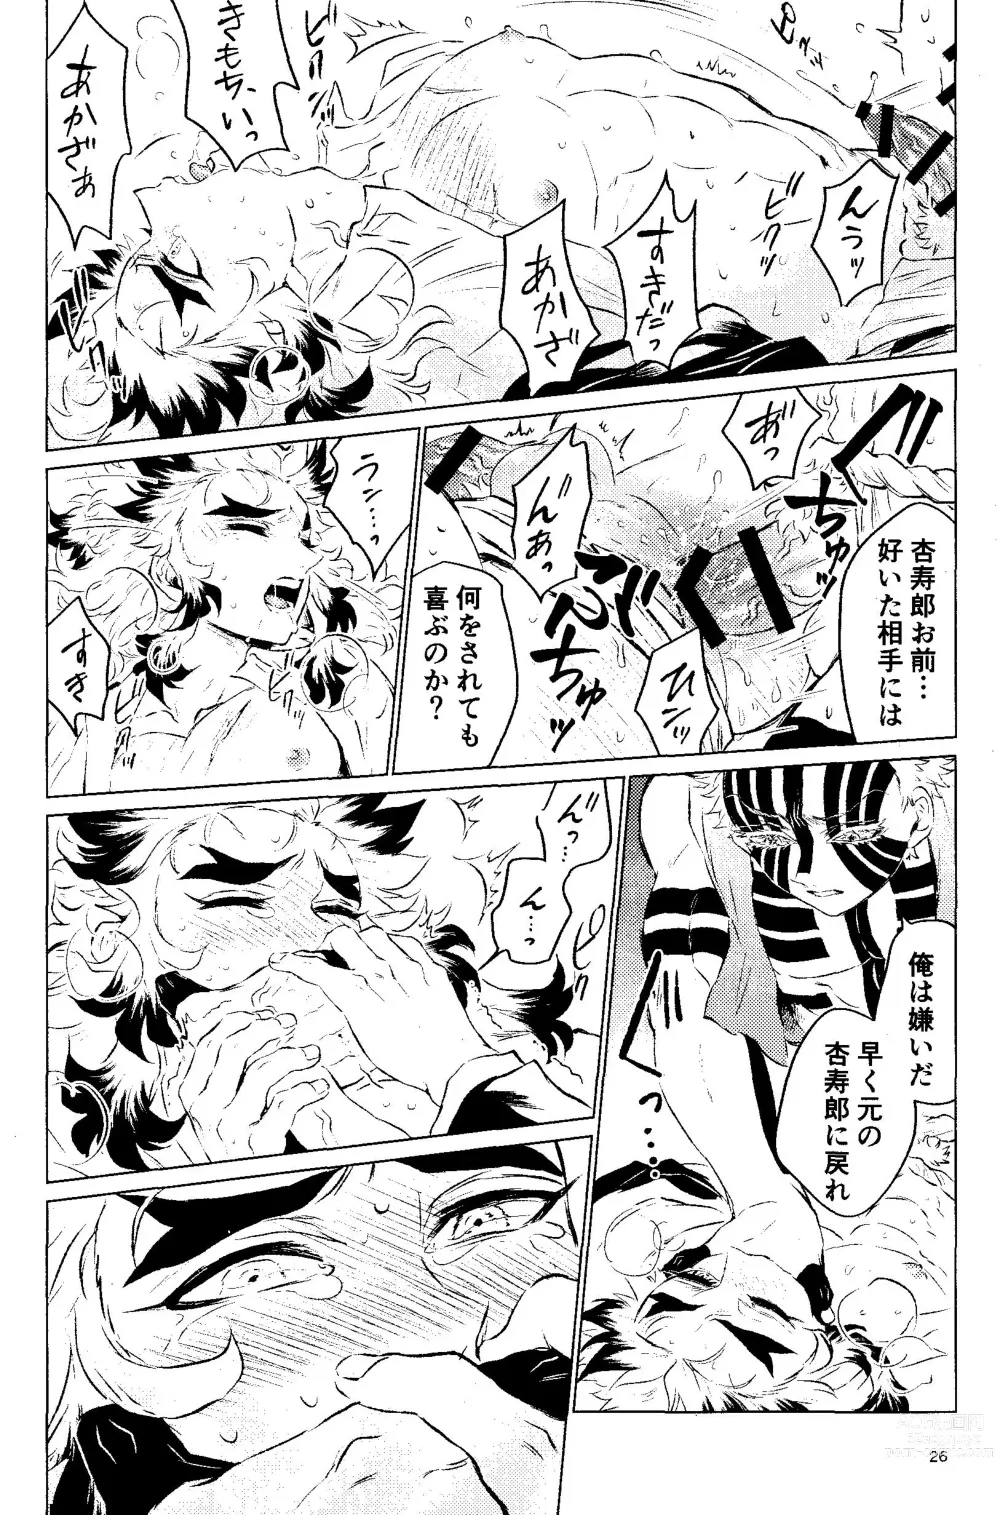 Page 24 of doujinshi Yuuen Kenki